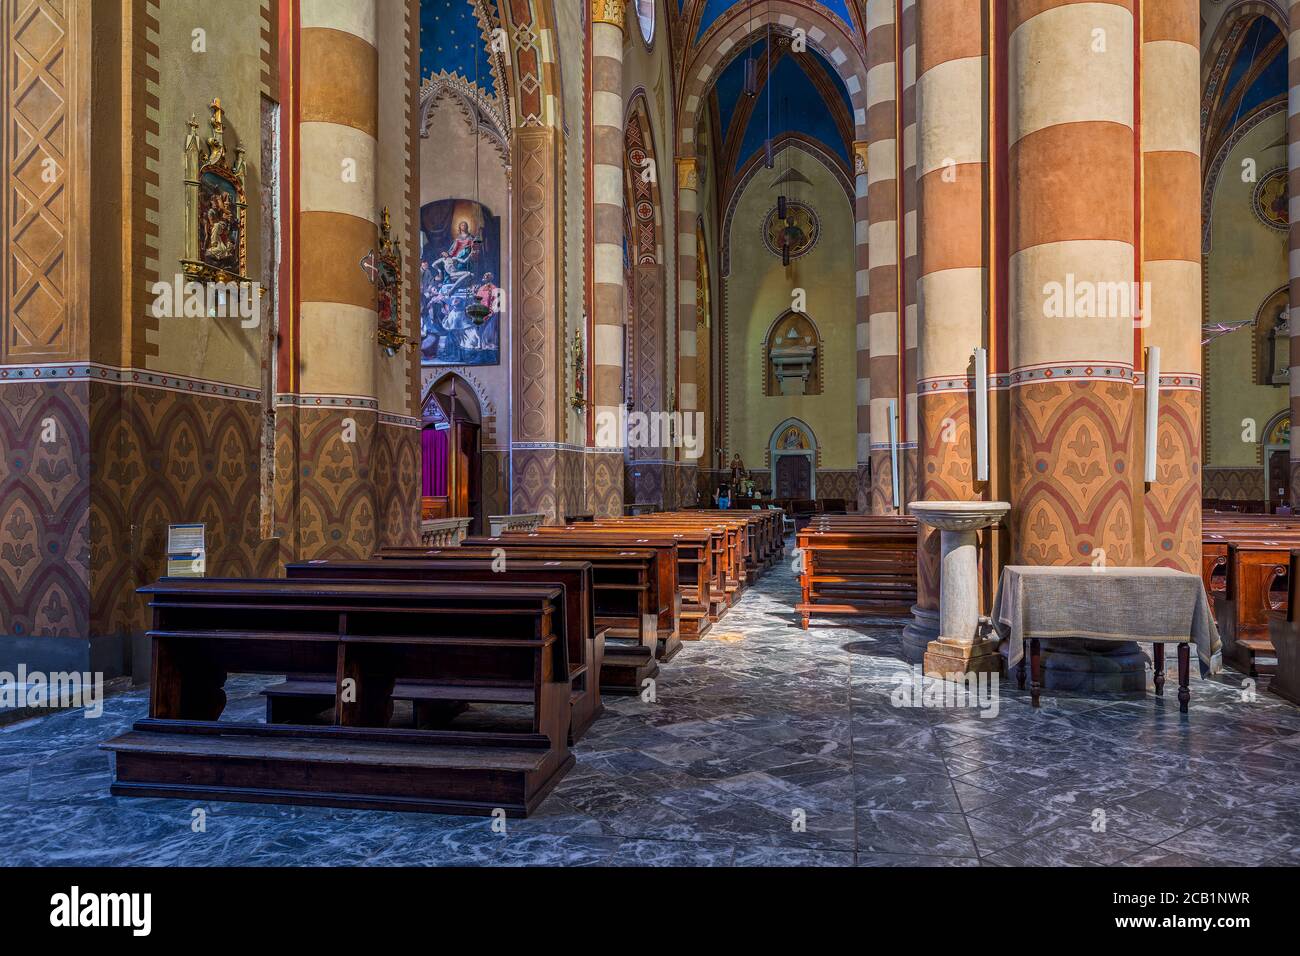 Holzbänke und Gang entlang Säulen im Inneren von San Lorenzo - eine römisch-katholische Kathedrale in Alba, Italien. Stockfoto